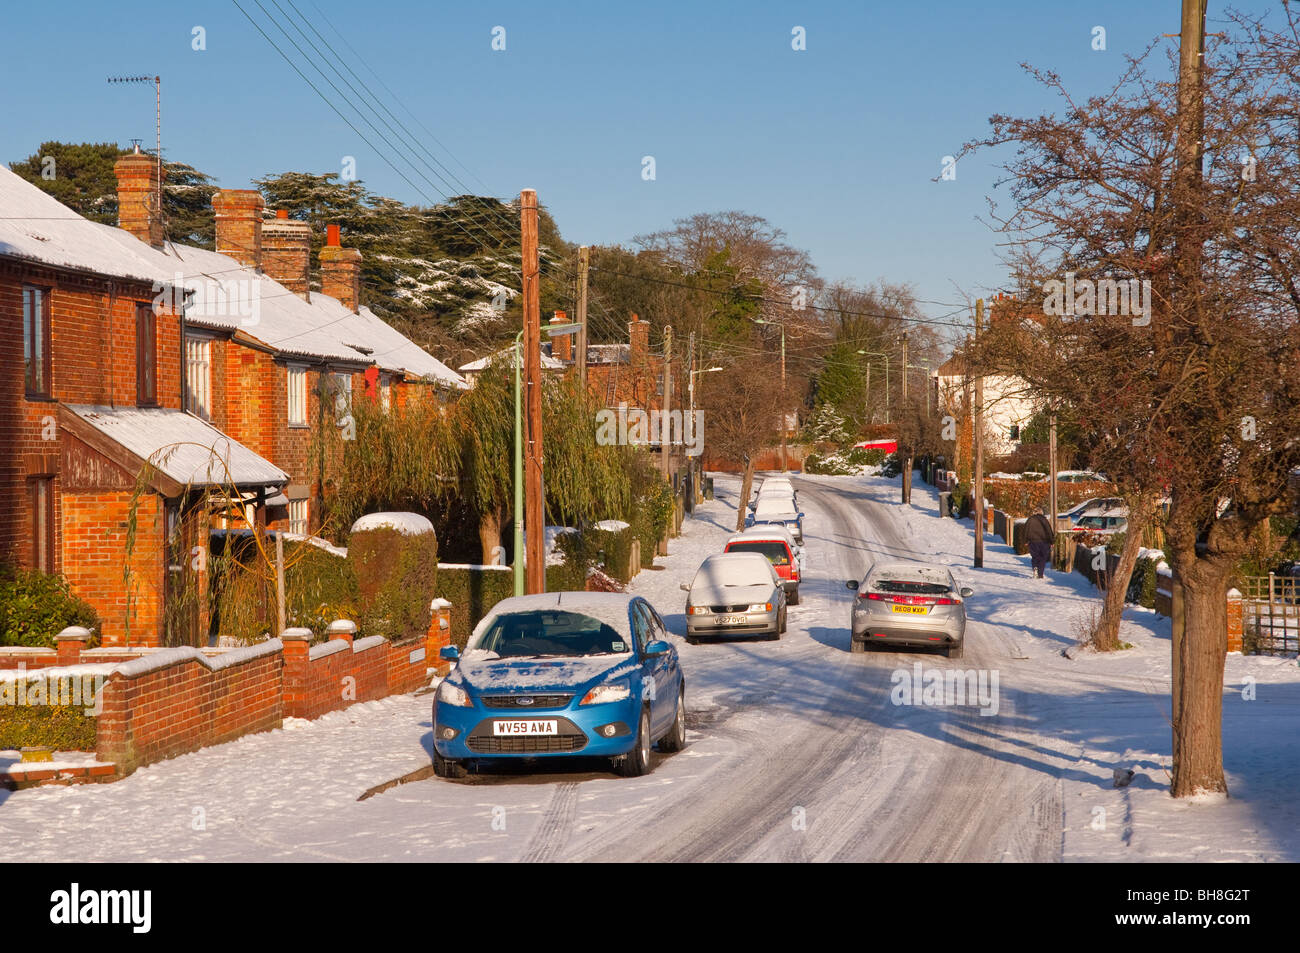 Ein Bild zeigt den Schnee auf einer ungritted Straße in einem bebauten Gebiet in Beccles, Suffolk, England, Großbritannien, Uk Stockfoto